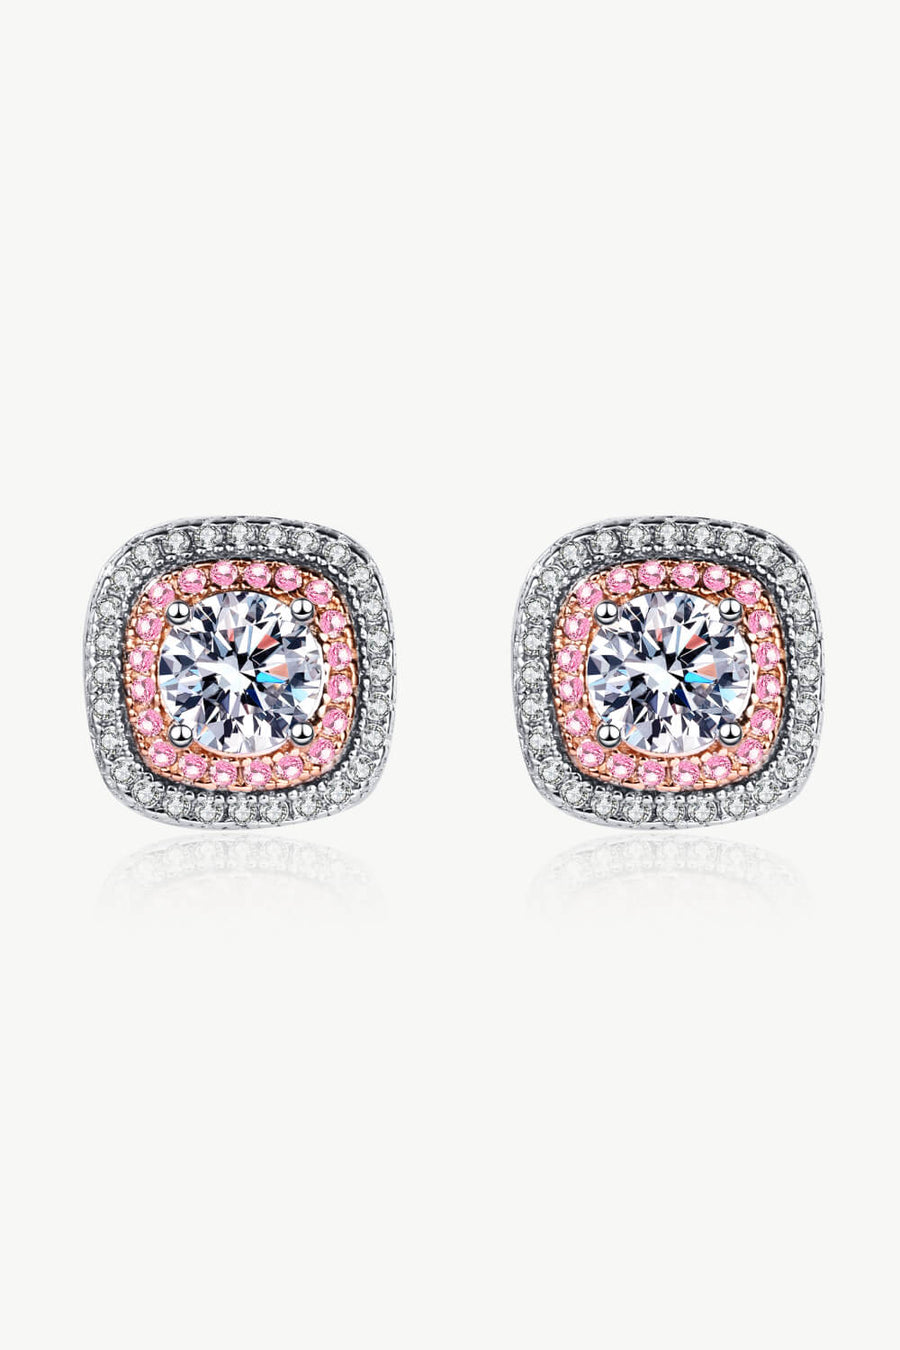 Best Diamond Earrings Jewelry Gifts for Women | 1 Carat Round Diamond Stud Earrings | MASON New York